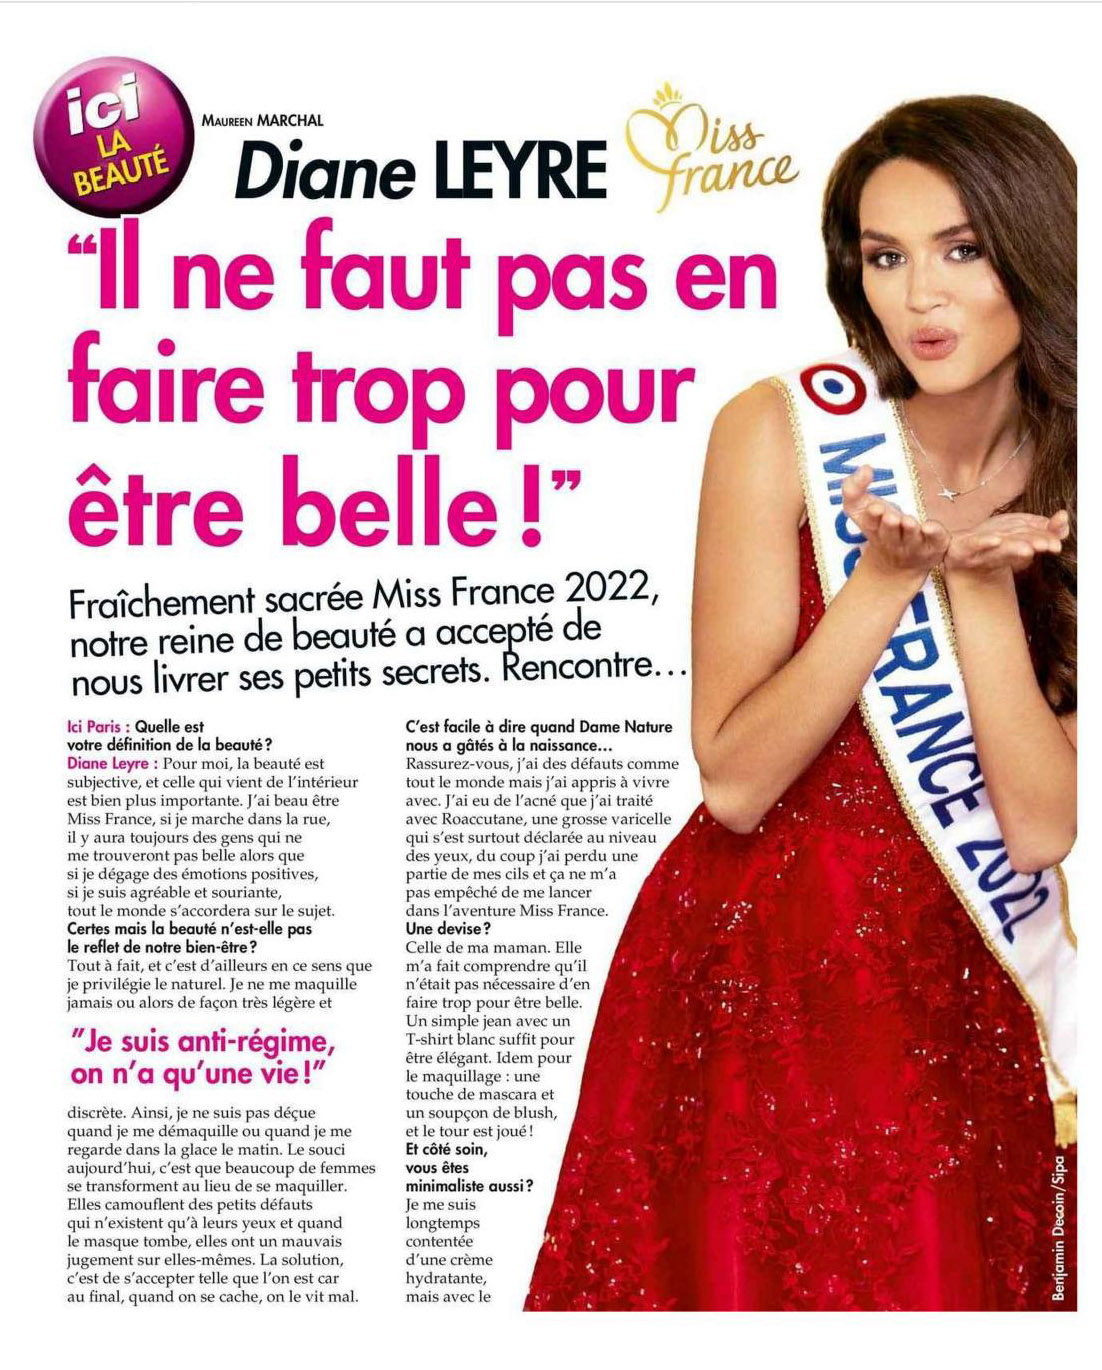 Les secrets beauté d’une Miss France